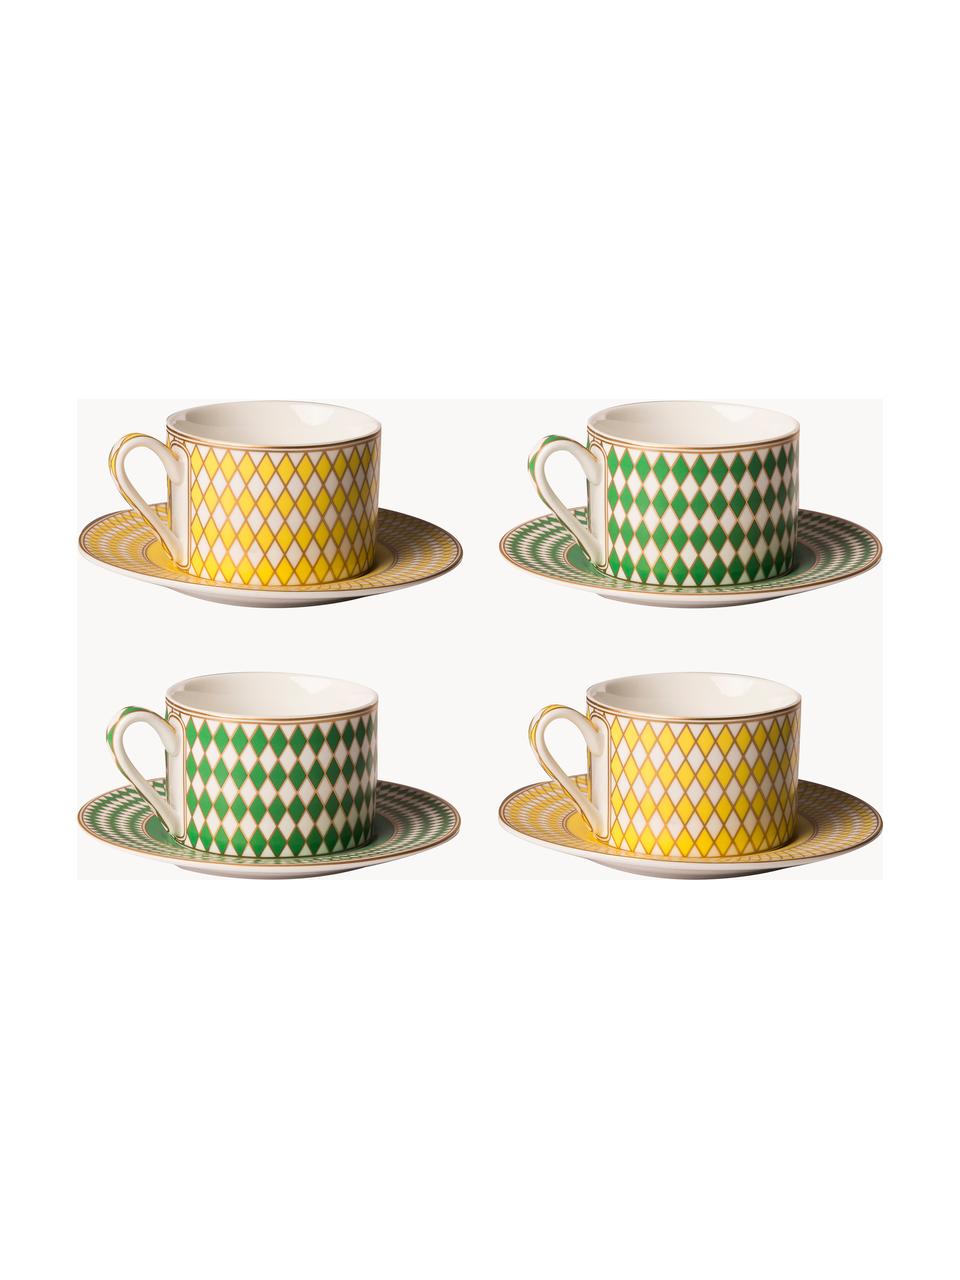 Kaffeetassen Chess mit Untertassen, 4er-Set, Porzellan, glasiert, Gelb, Grün, Off White, Ø 9 x H 6 cm, 200 ml